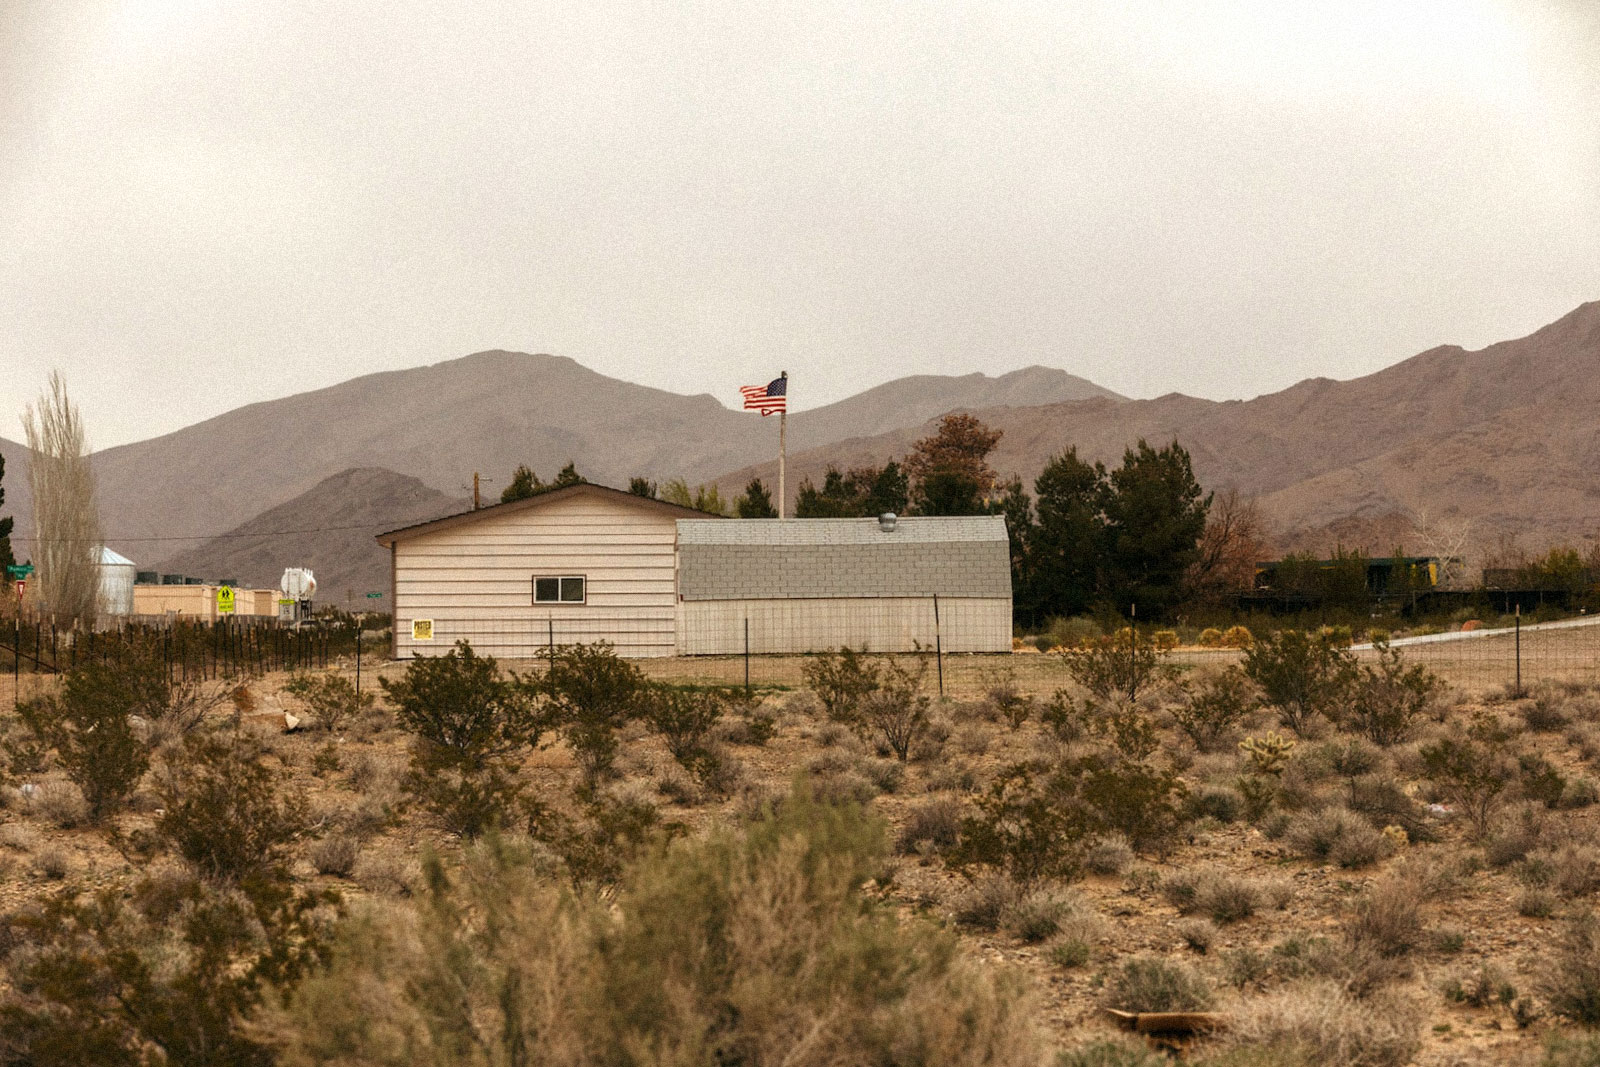 une maison arborant un drapeau américain dans un désert